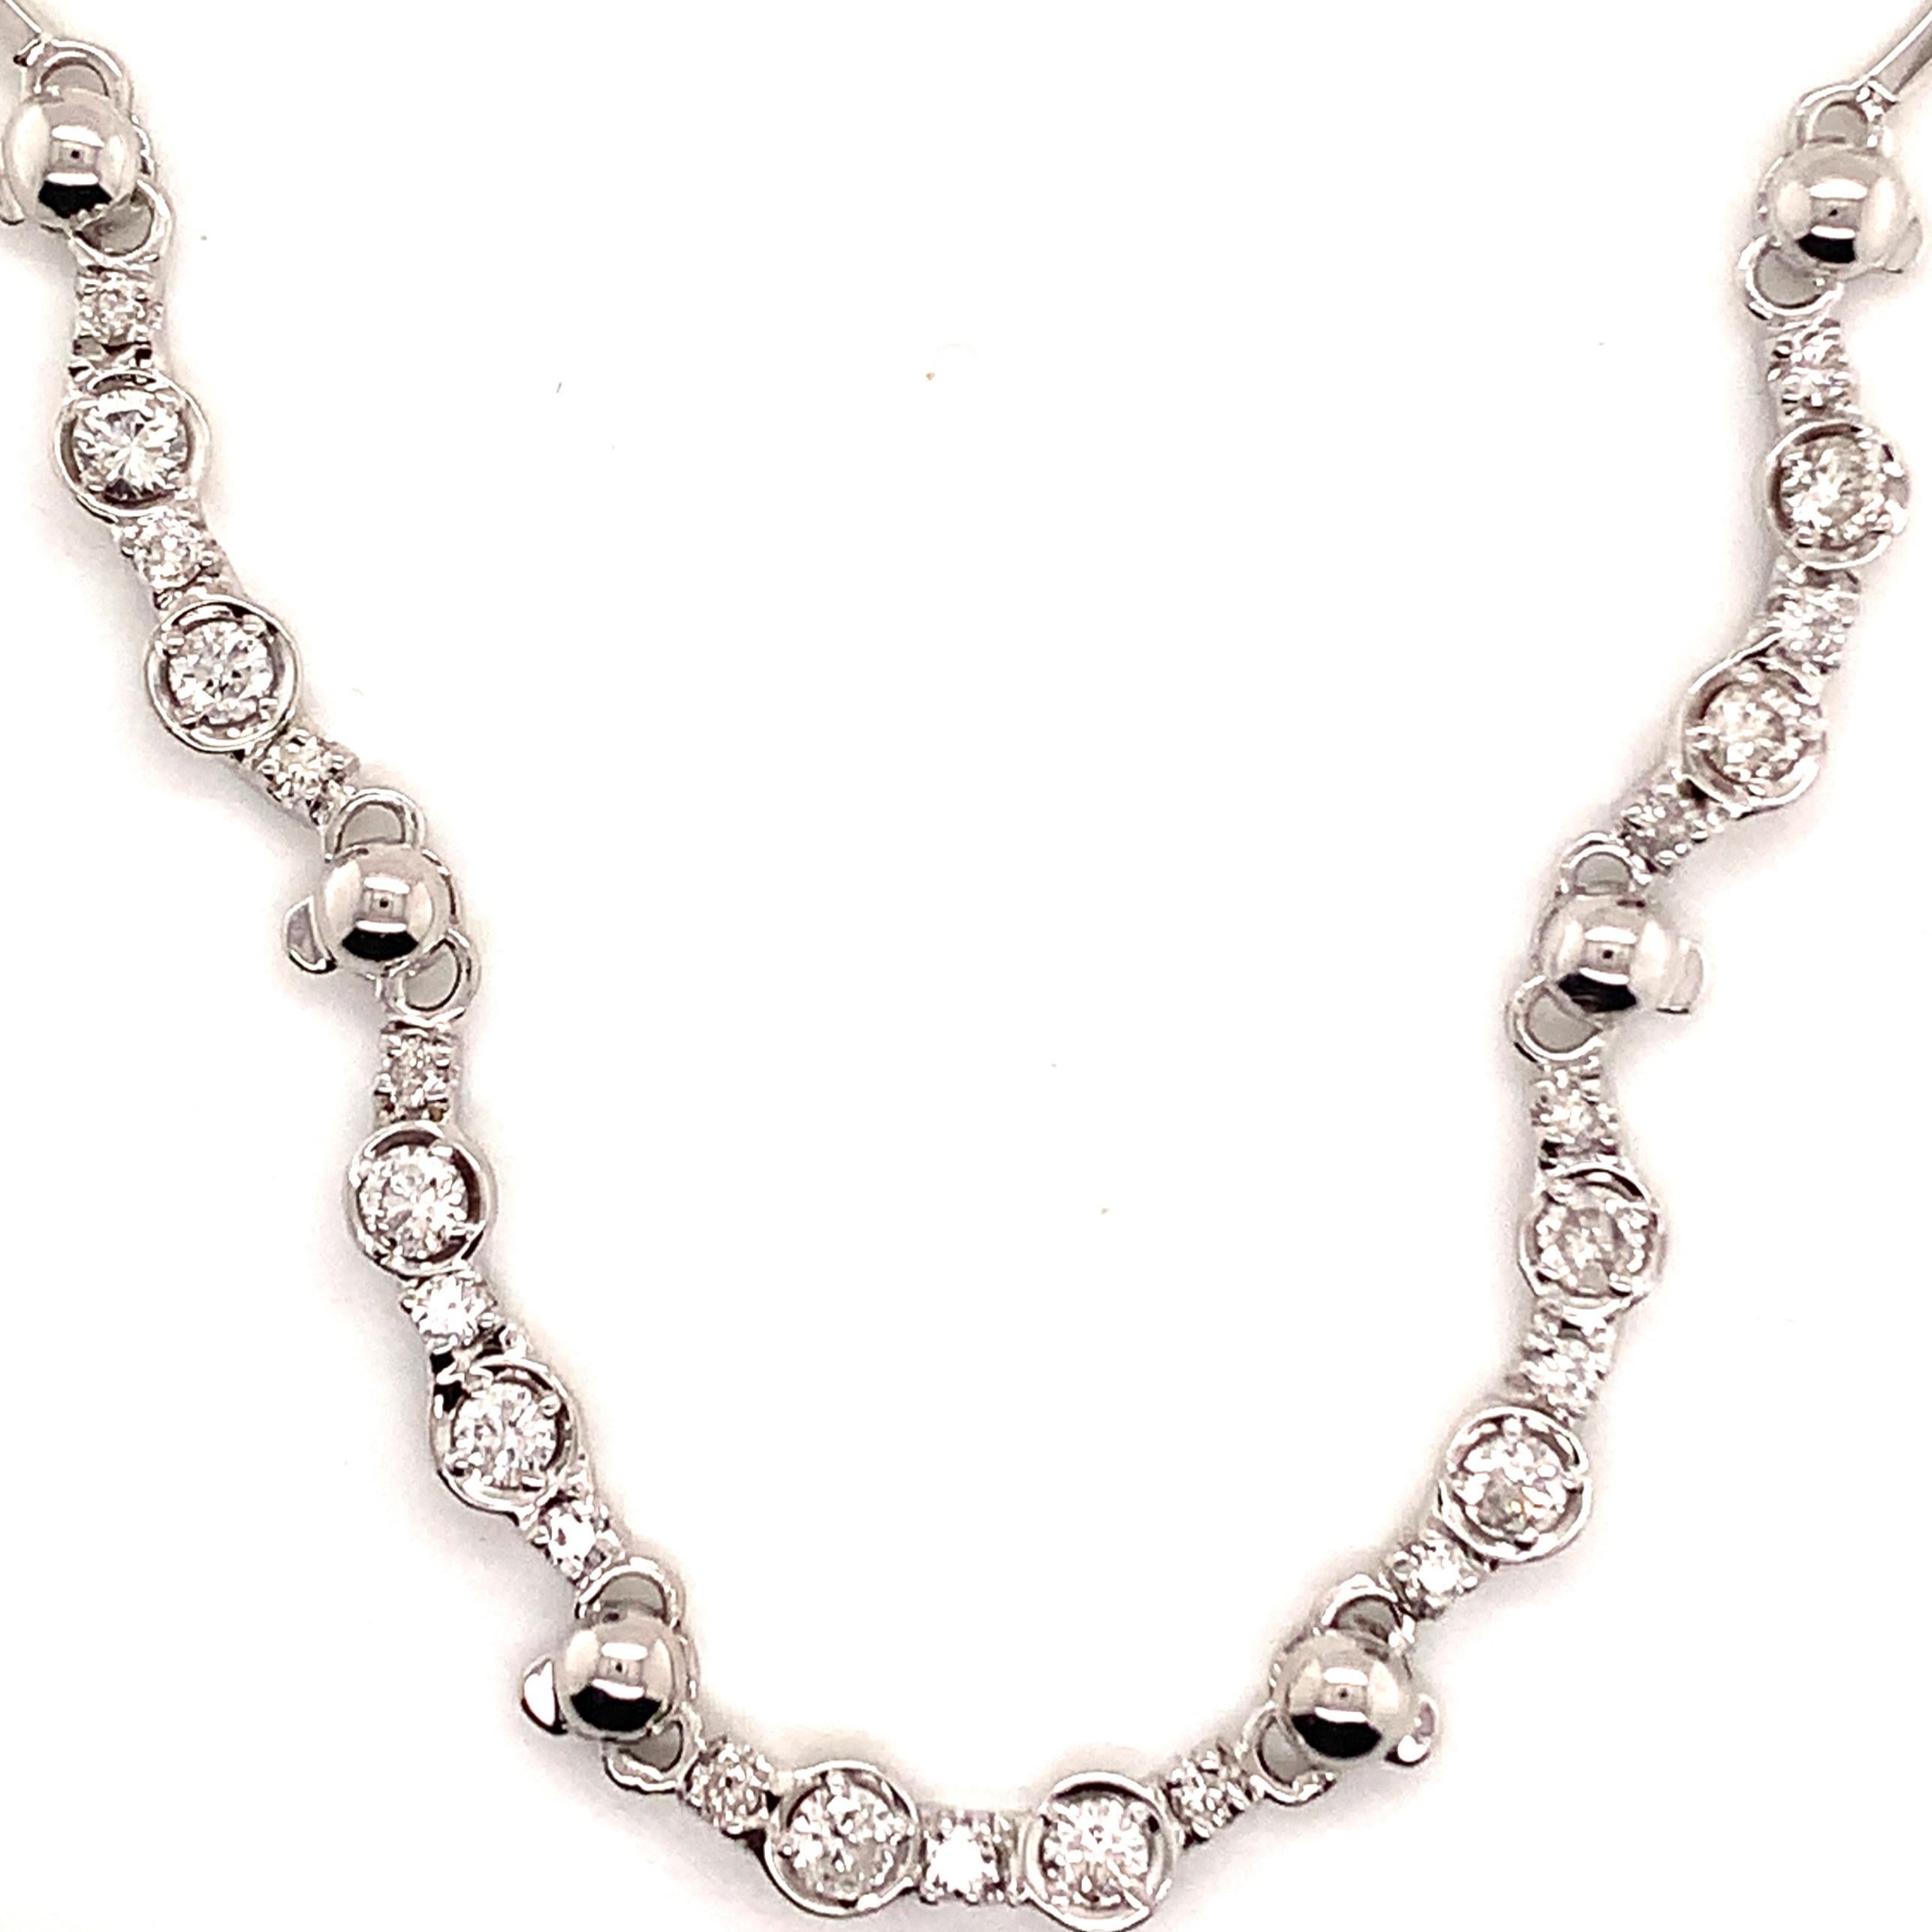 Natürliche fein facettiert Qualität Diamant Halskette 14k Gold 1,5 TCW 16,50 Zoll zertifiziert $4.950 822590

Dies ist ein einzigartiges, maßgeschneidertes, glamouröses Schmuckstück!

Nichts sagt mehr 